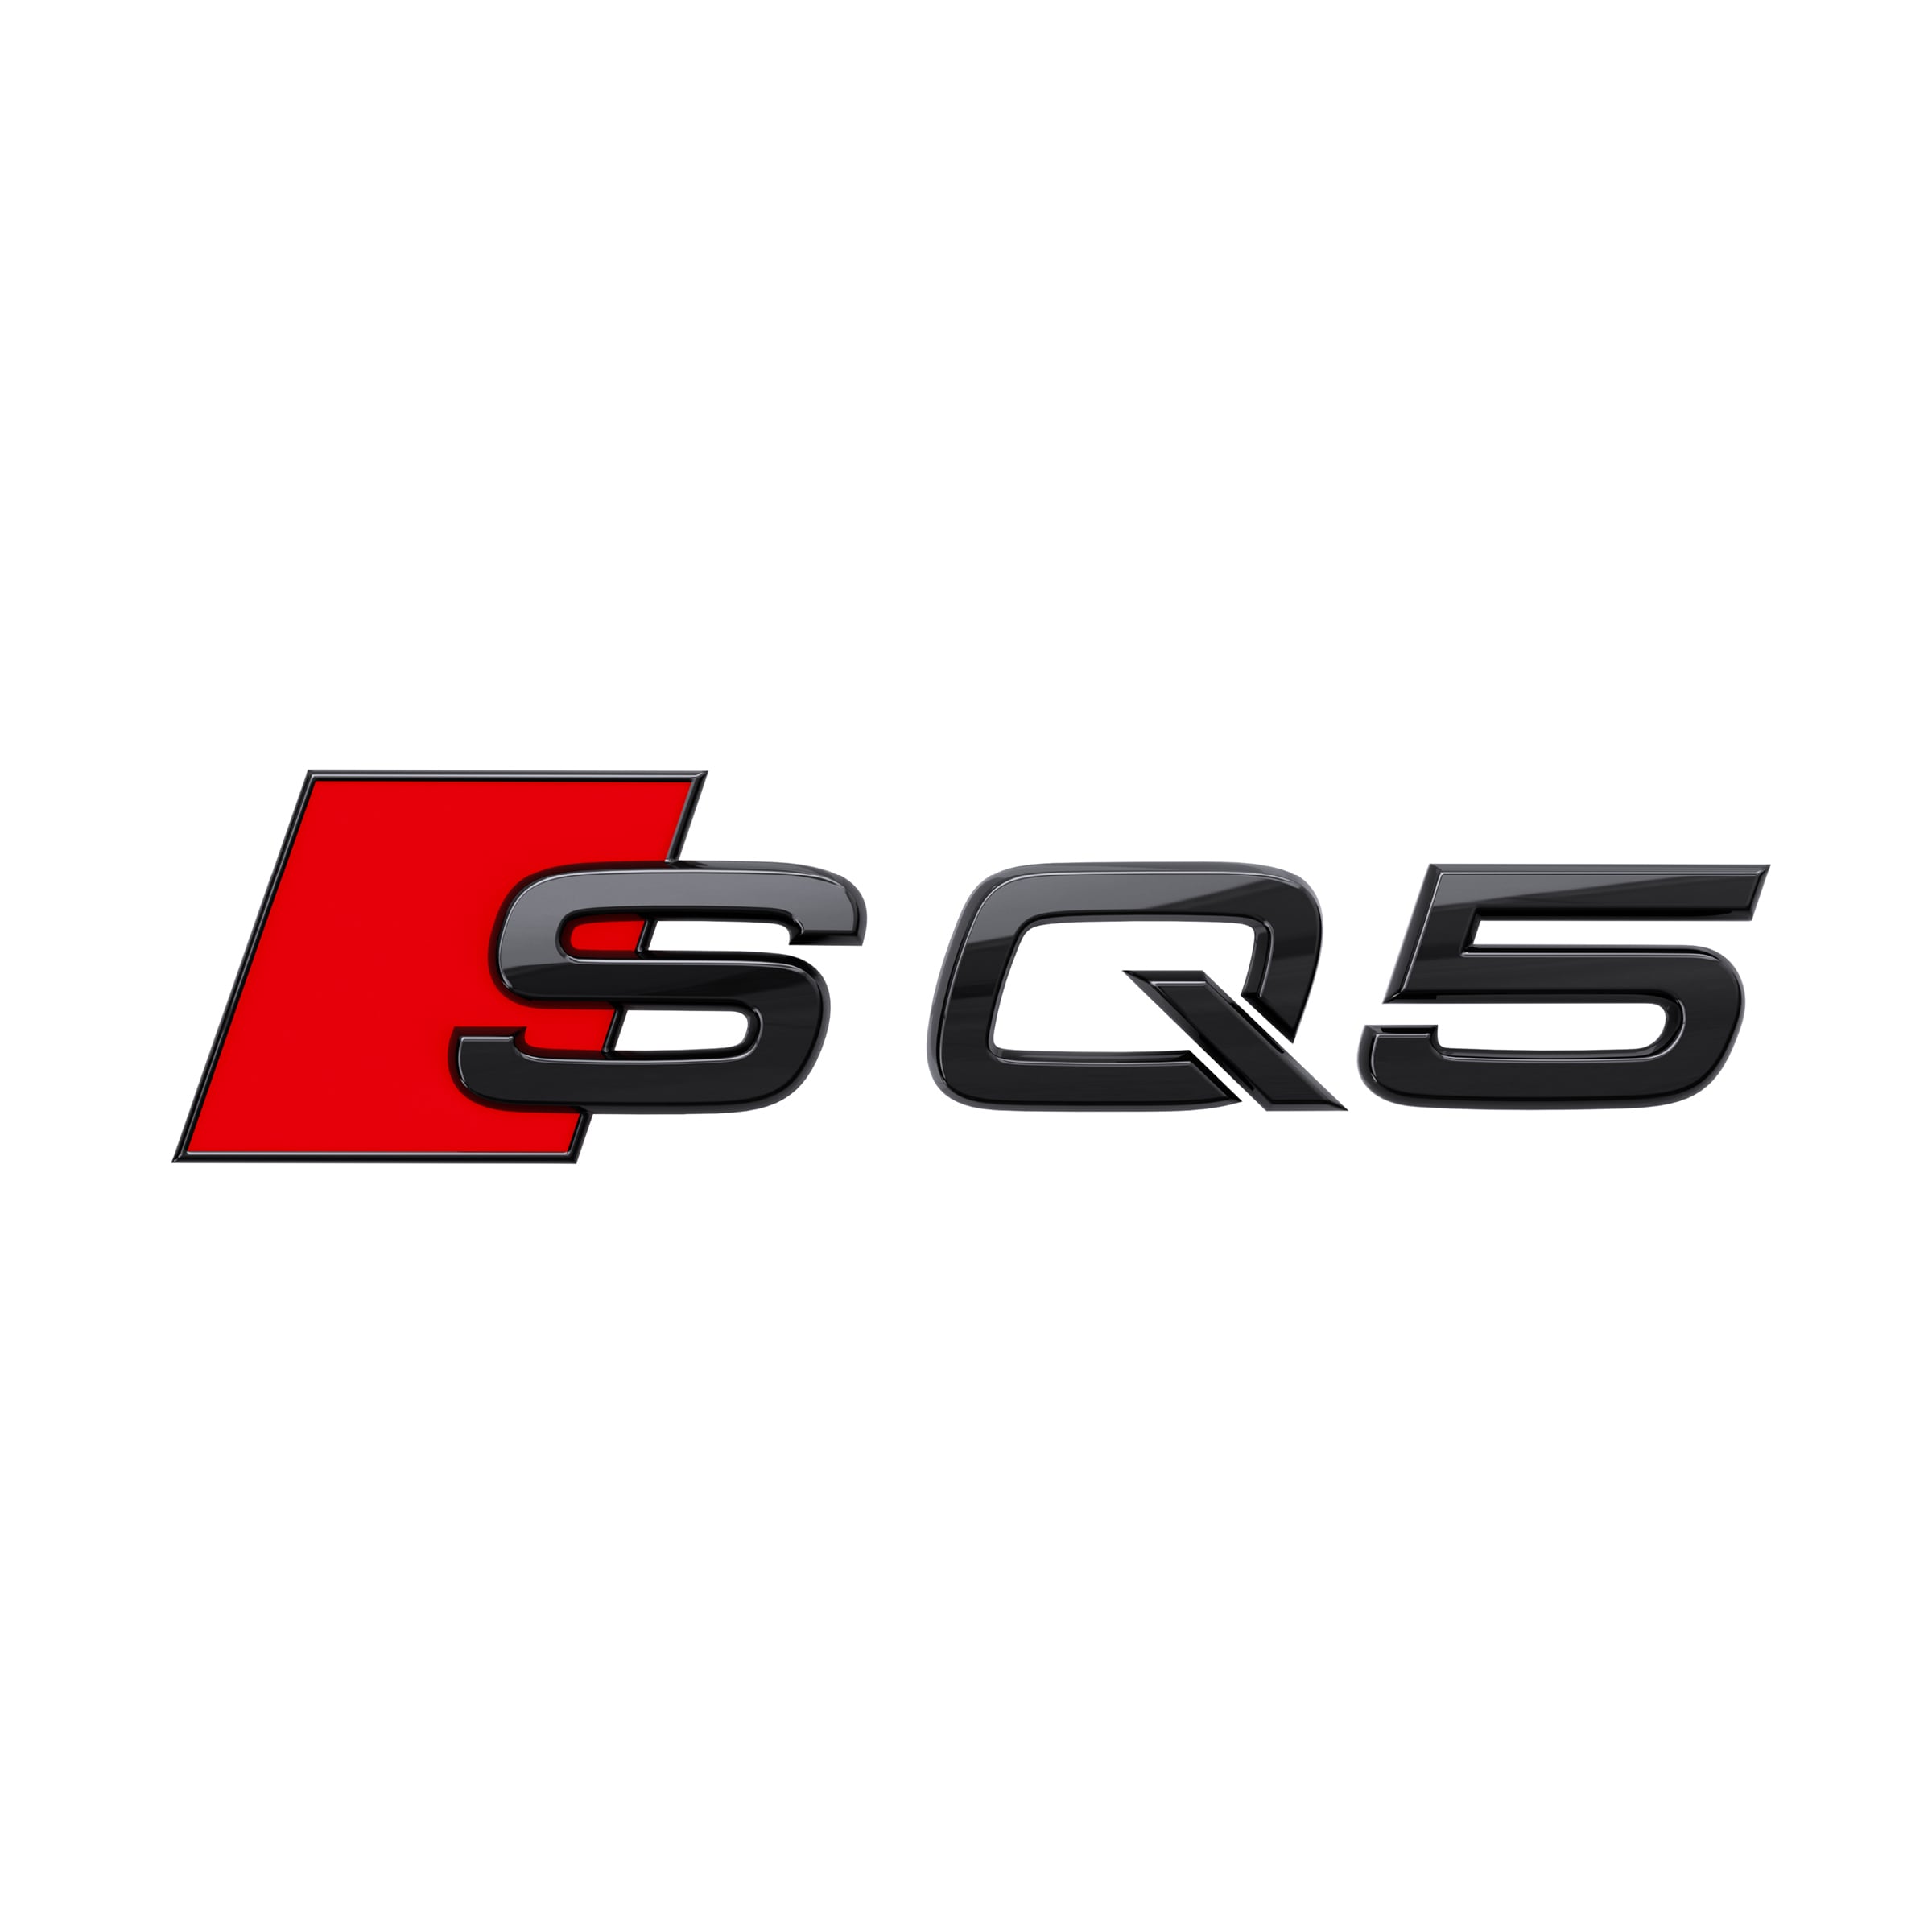 Modellbezeichnung SQ5 in Schwarz